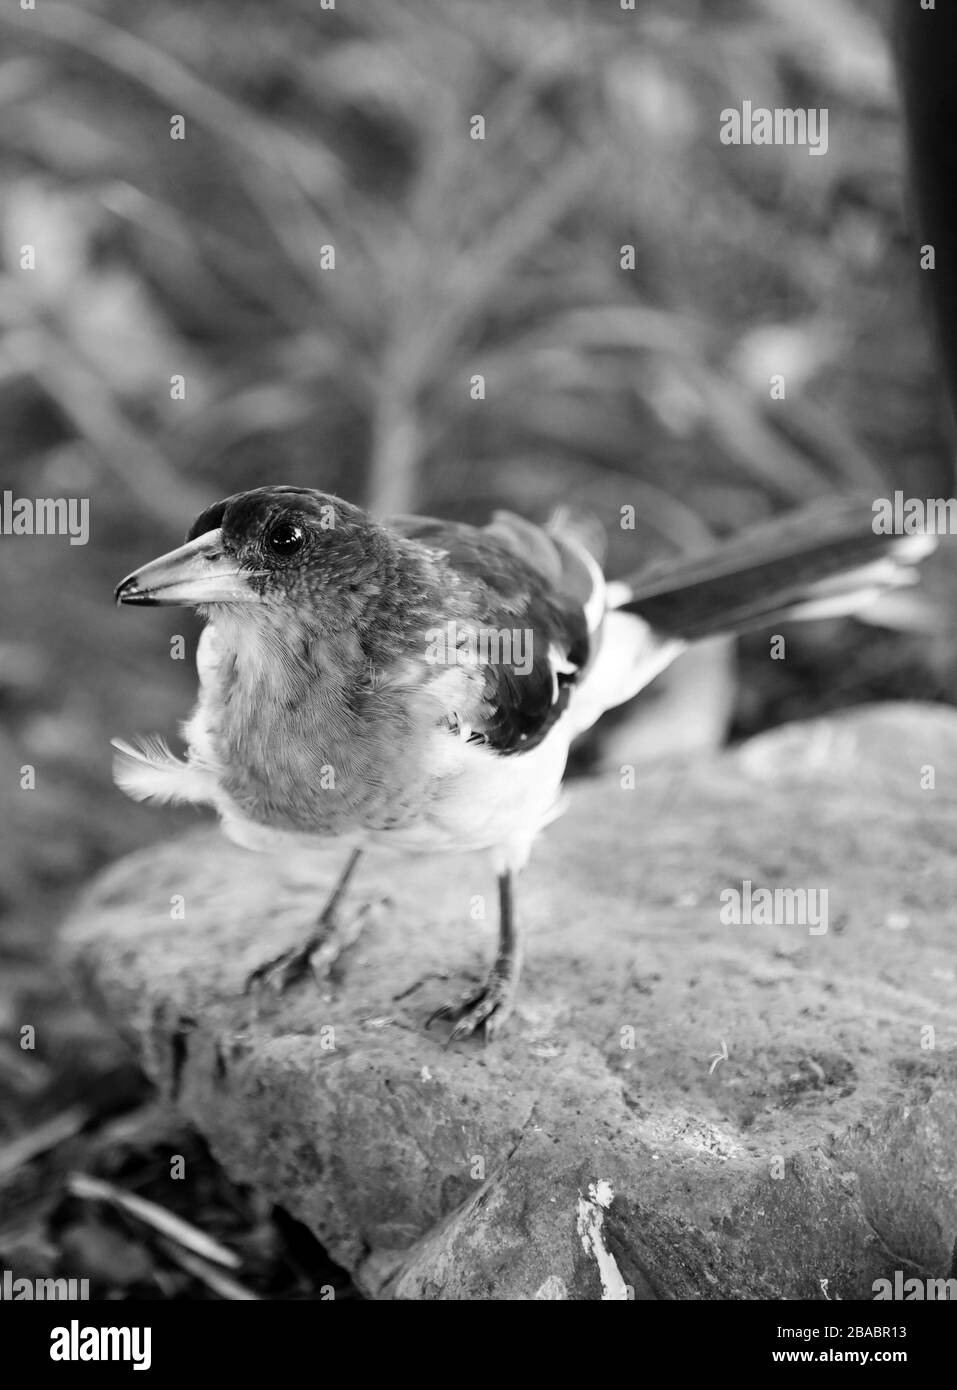 Animaux de ferme: Les oiseaux ont trouvé une ferme locale. Joli petit oiseau perché. Image en noir et blanc d'un oiseau sur un rocher. Banque D'Images